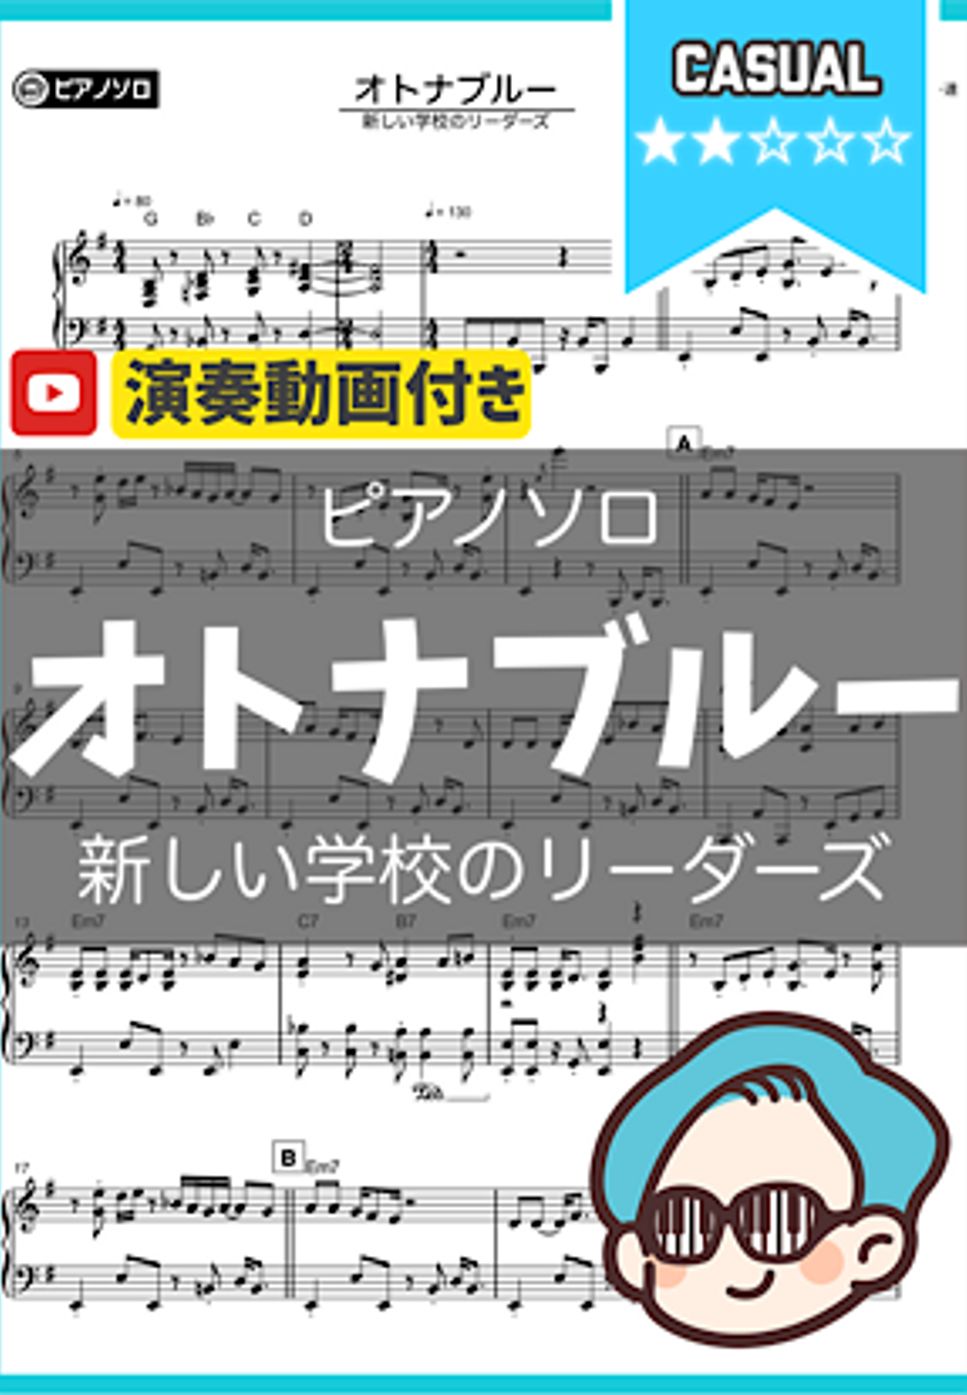 新しい学校のリーダー達 - オトナブルー 楽譜 by シータピアノ